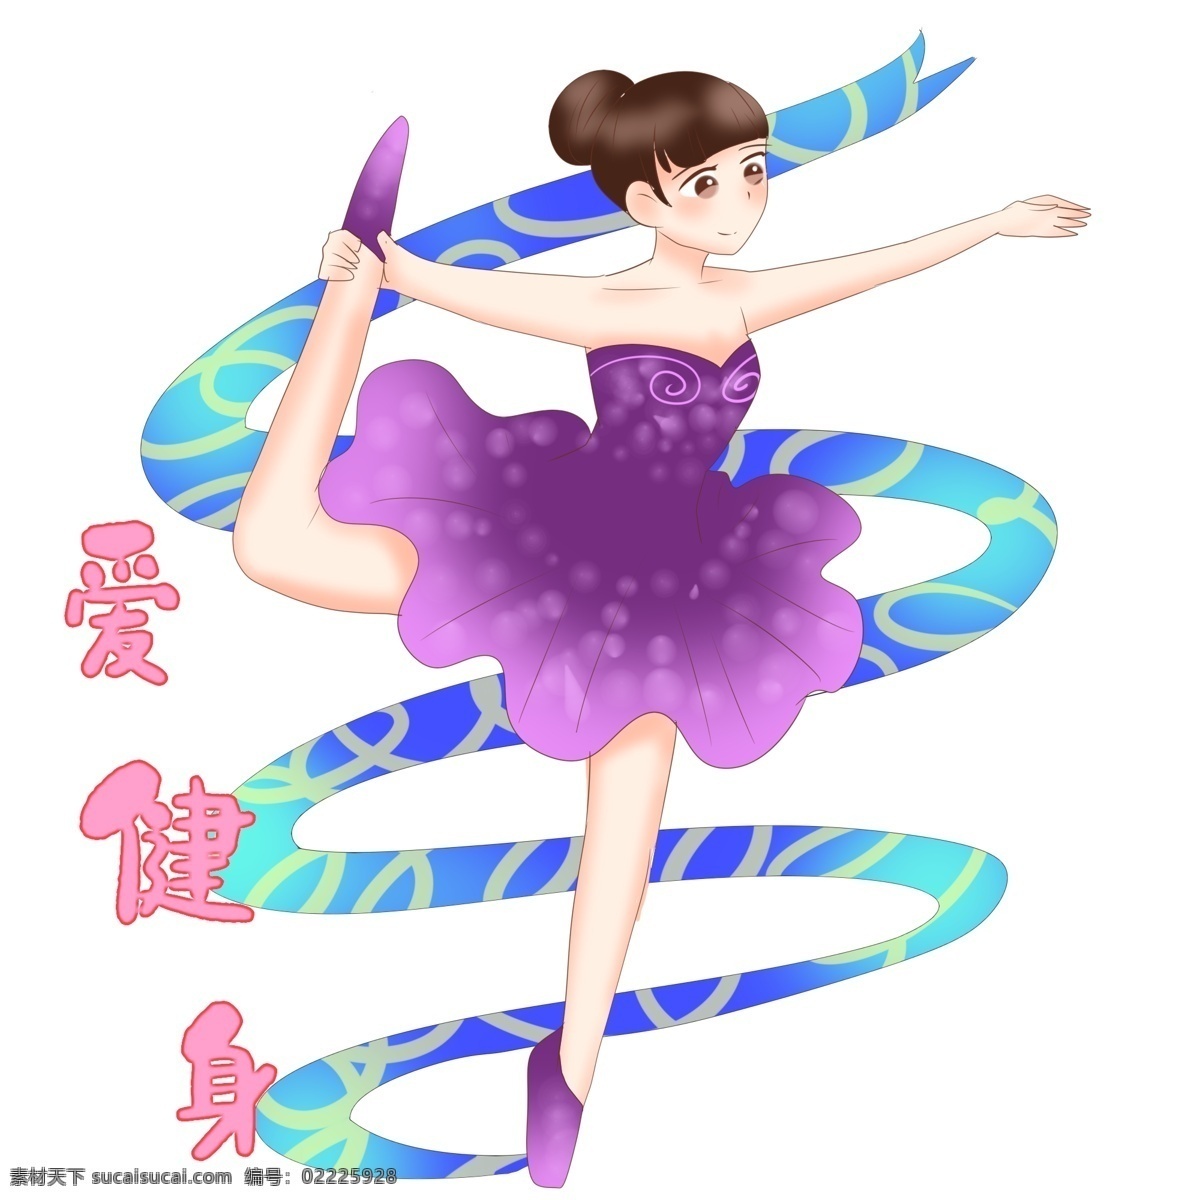 跳舞 健身 运动 插画 紫色的衣服 卡通插画 运动插画 健身运动 锻炼身体 活动筋骨 跳舞的健身